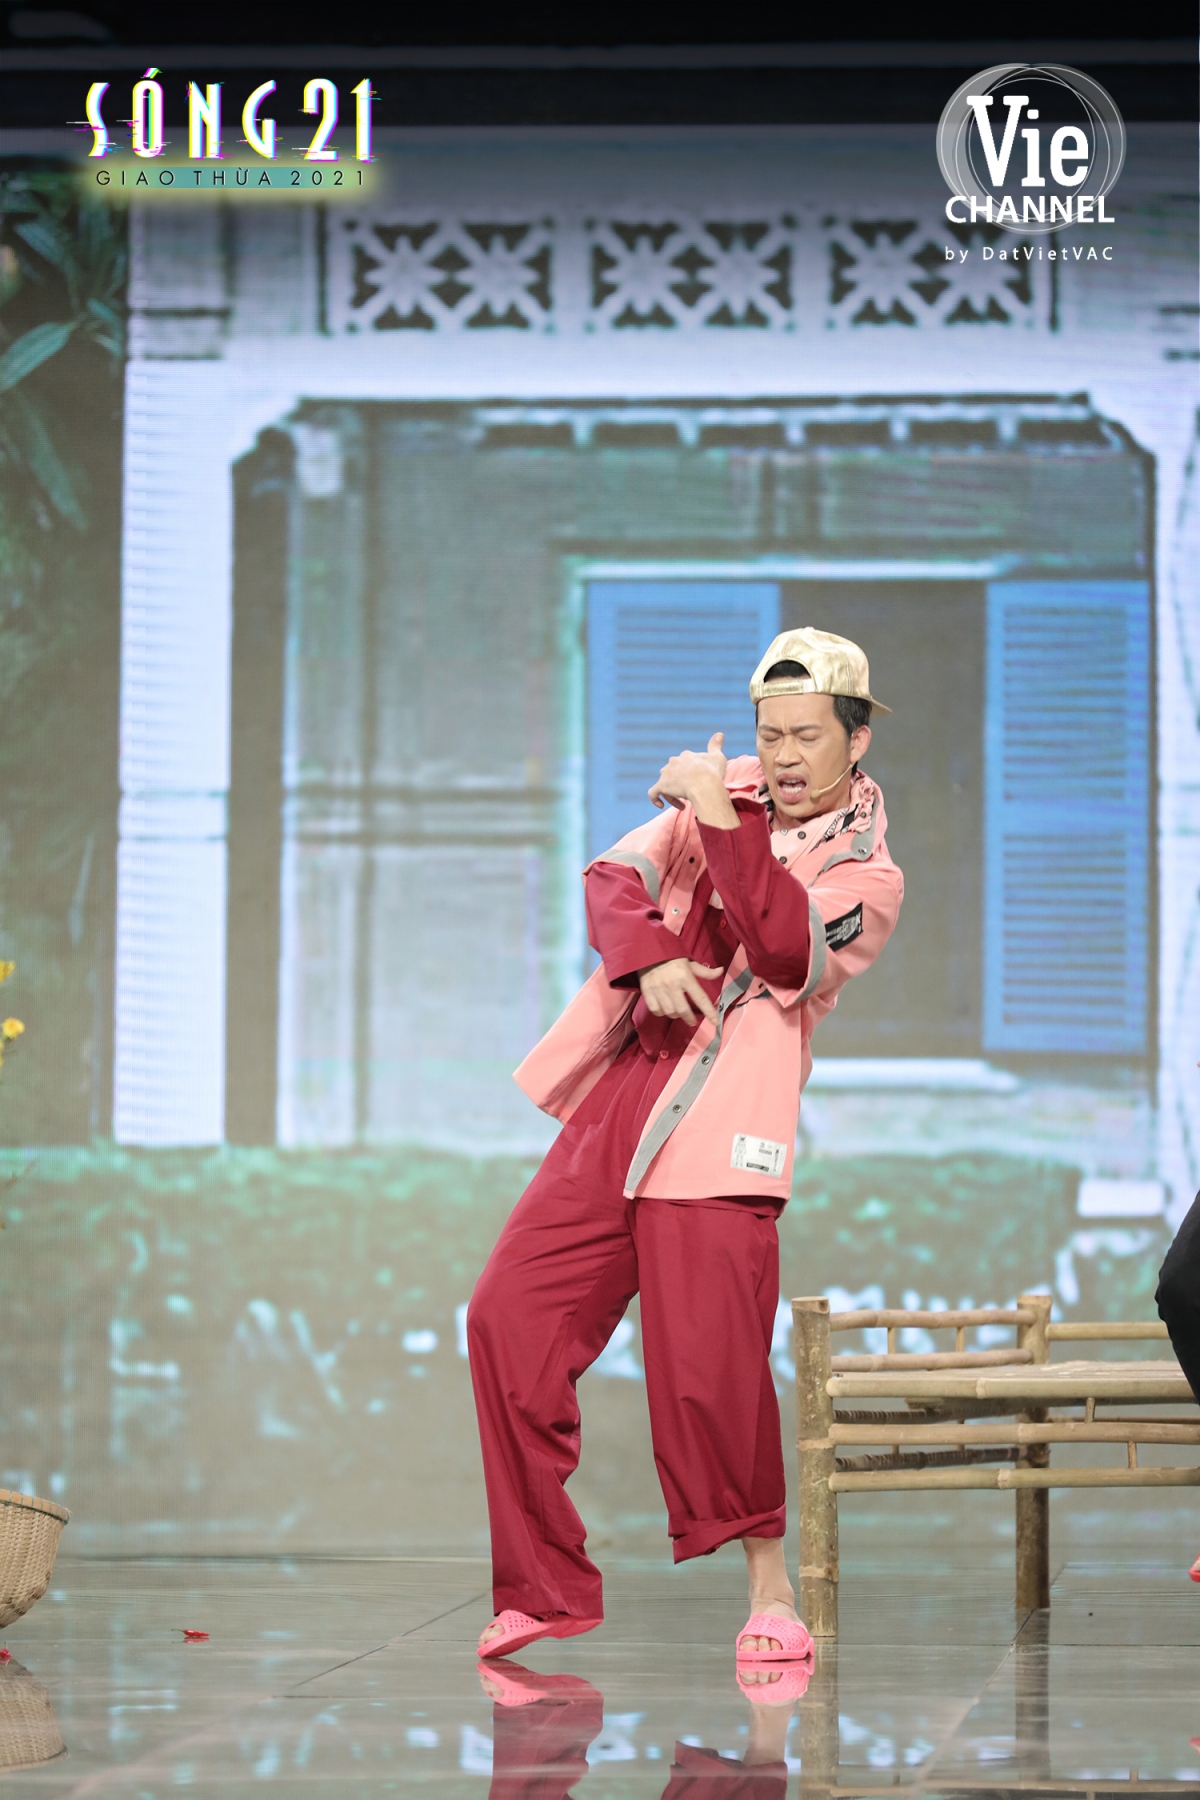 Hoài Linh bất ngờ hóa rapper Binz, trở lại màn ảnh nhỏ trong đêm Giao thừa Tết Tân Sửu